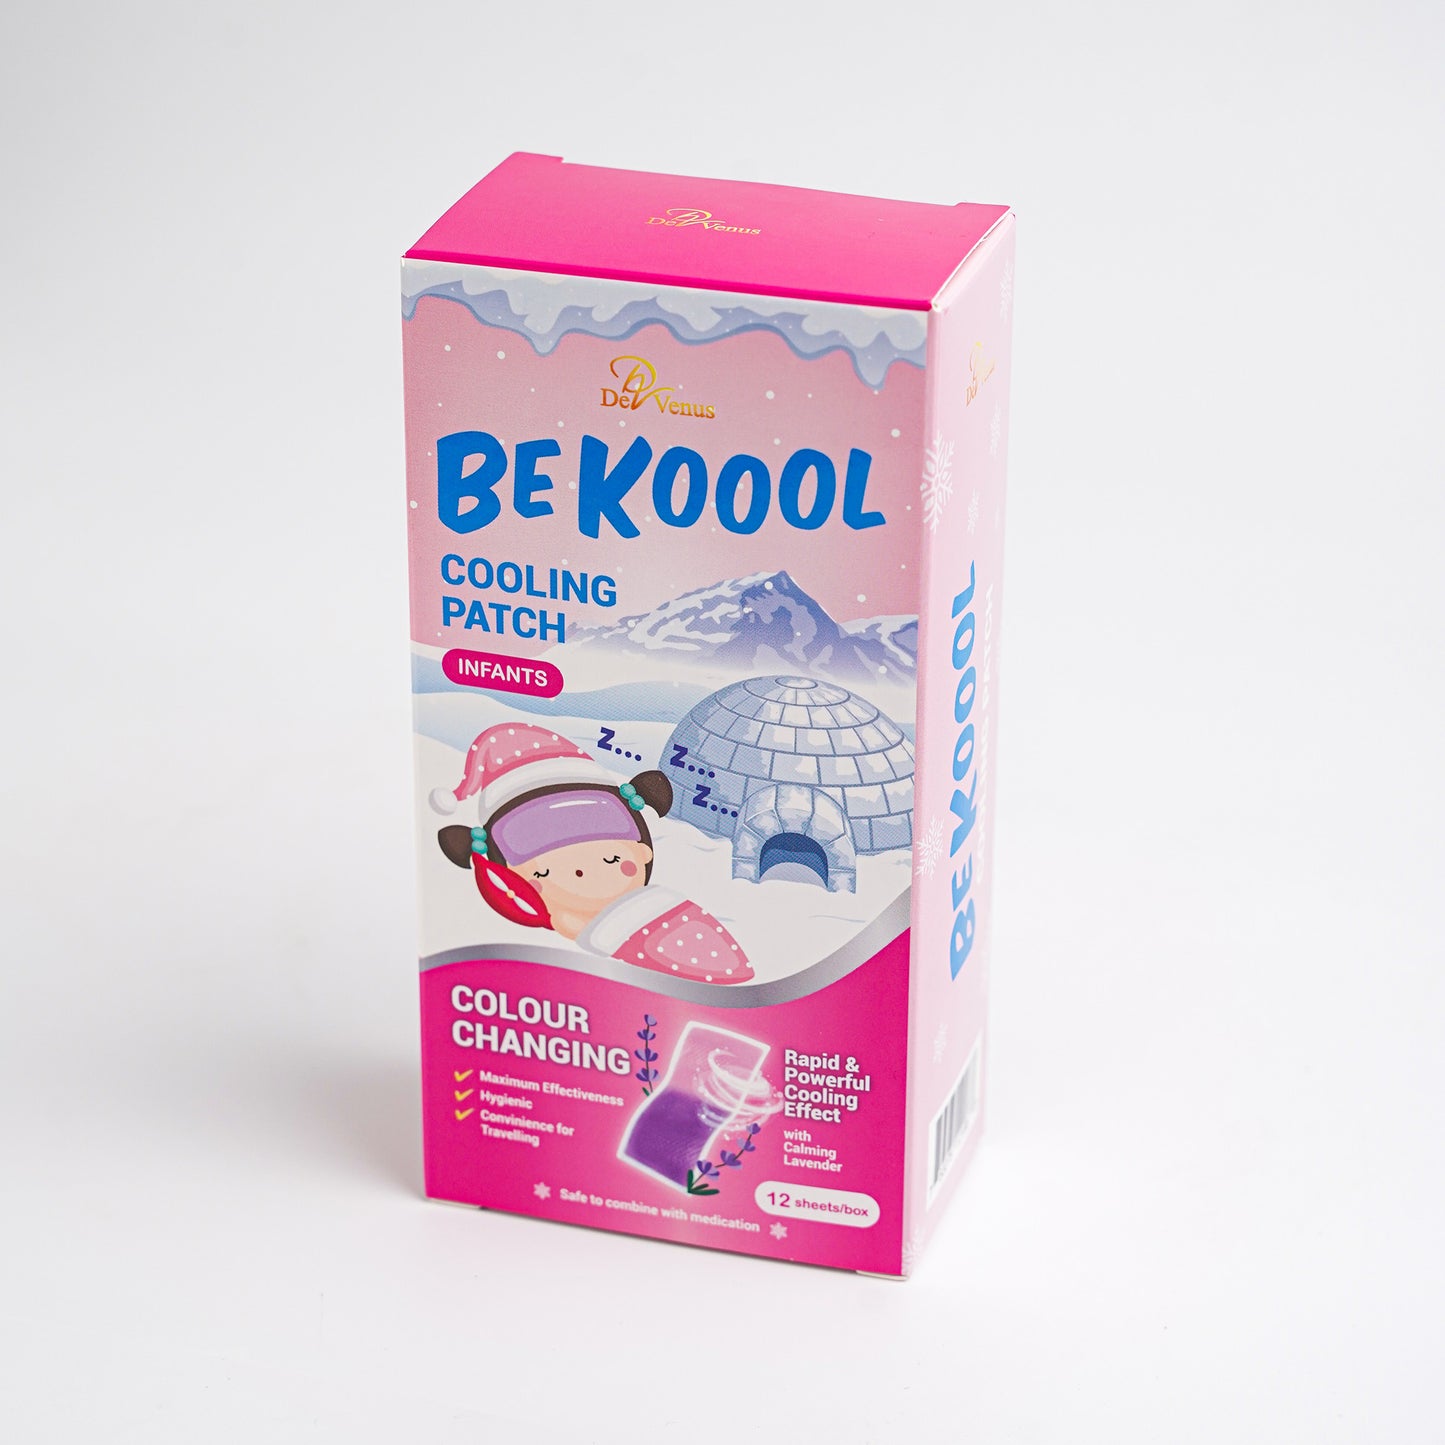 De Venus Be Koool Cooling Fever Patch (Adult & Kids / Infant)